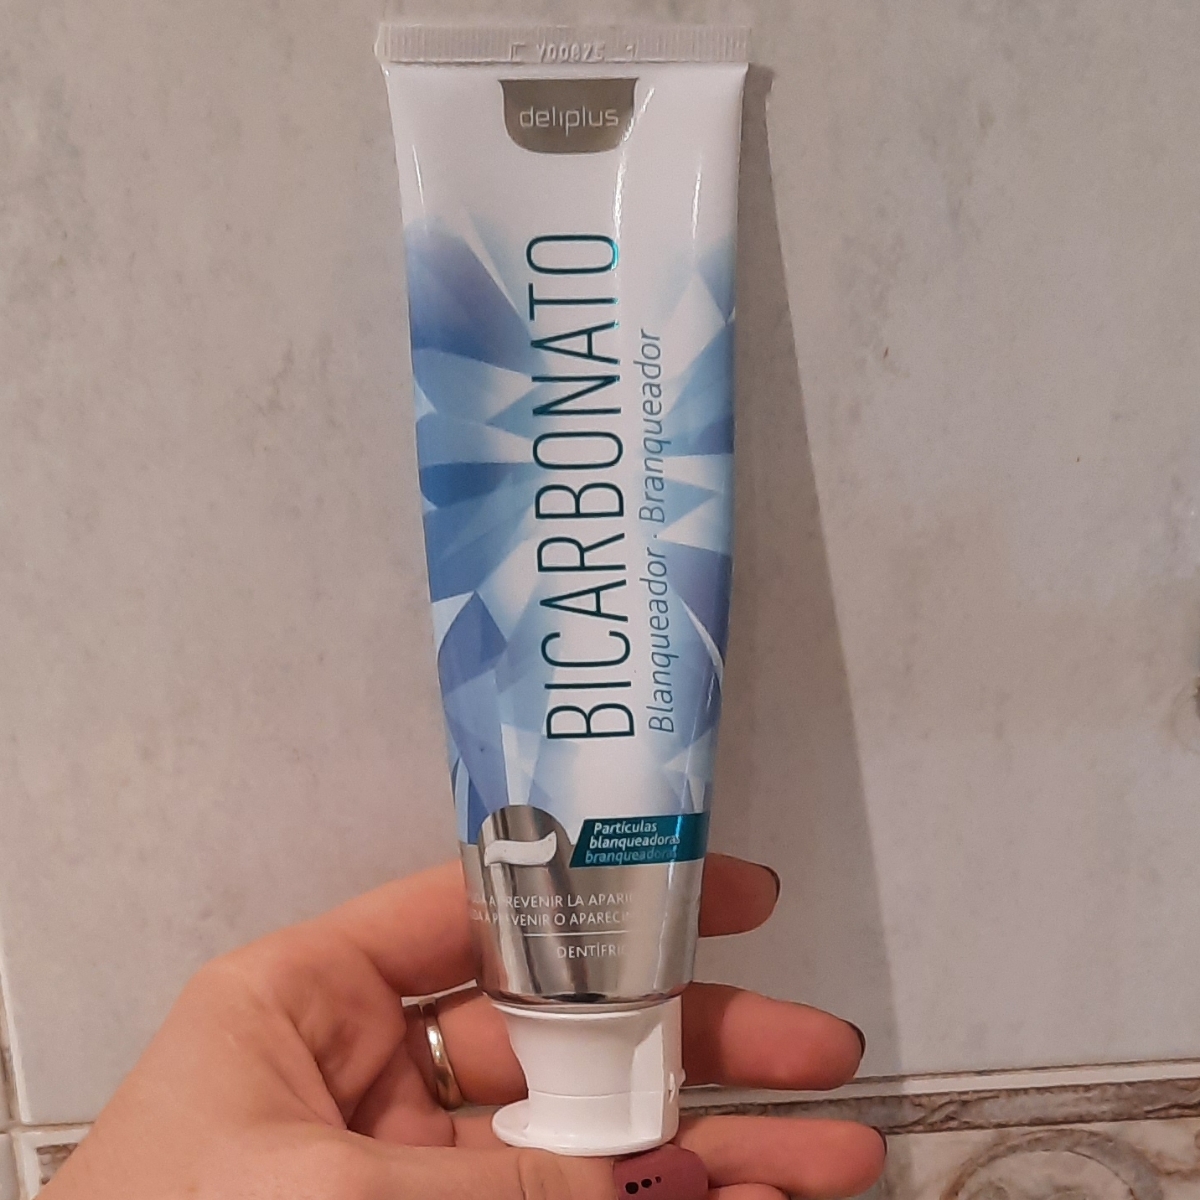 Deliplus Crema Dental con Bicarbonato Efecto Blanqueador Review | abillion